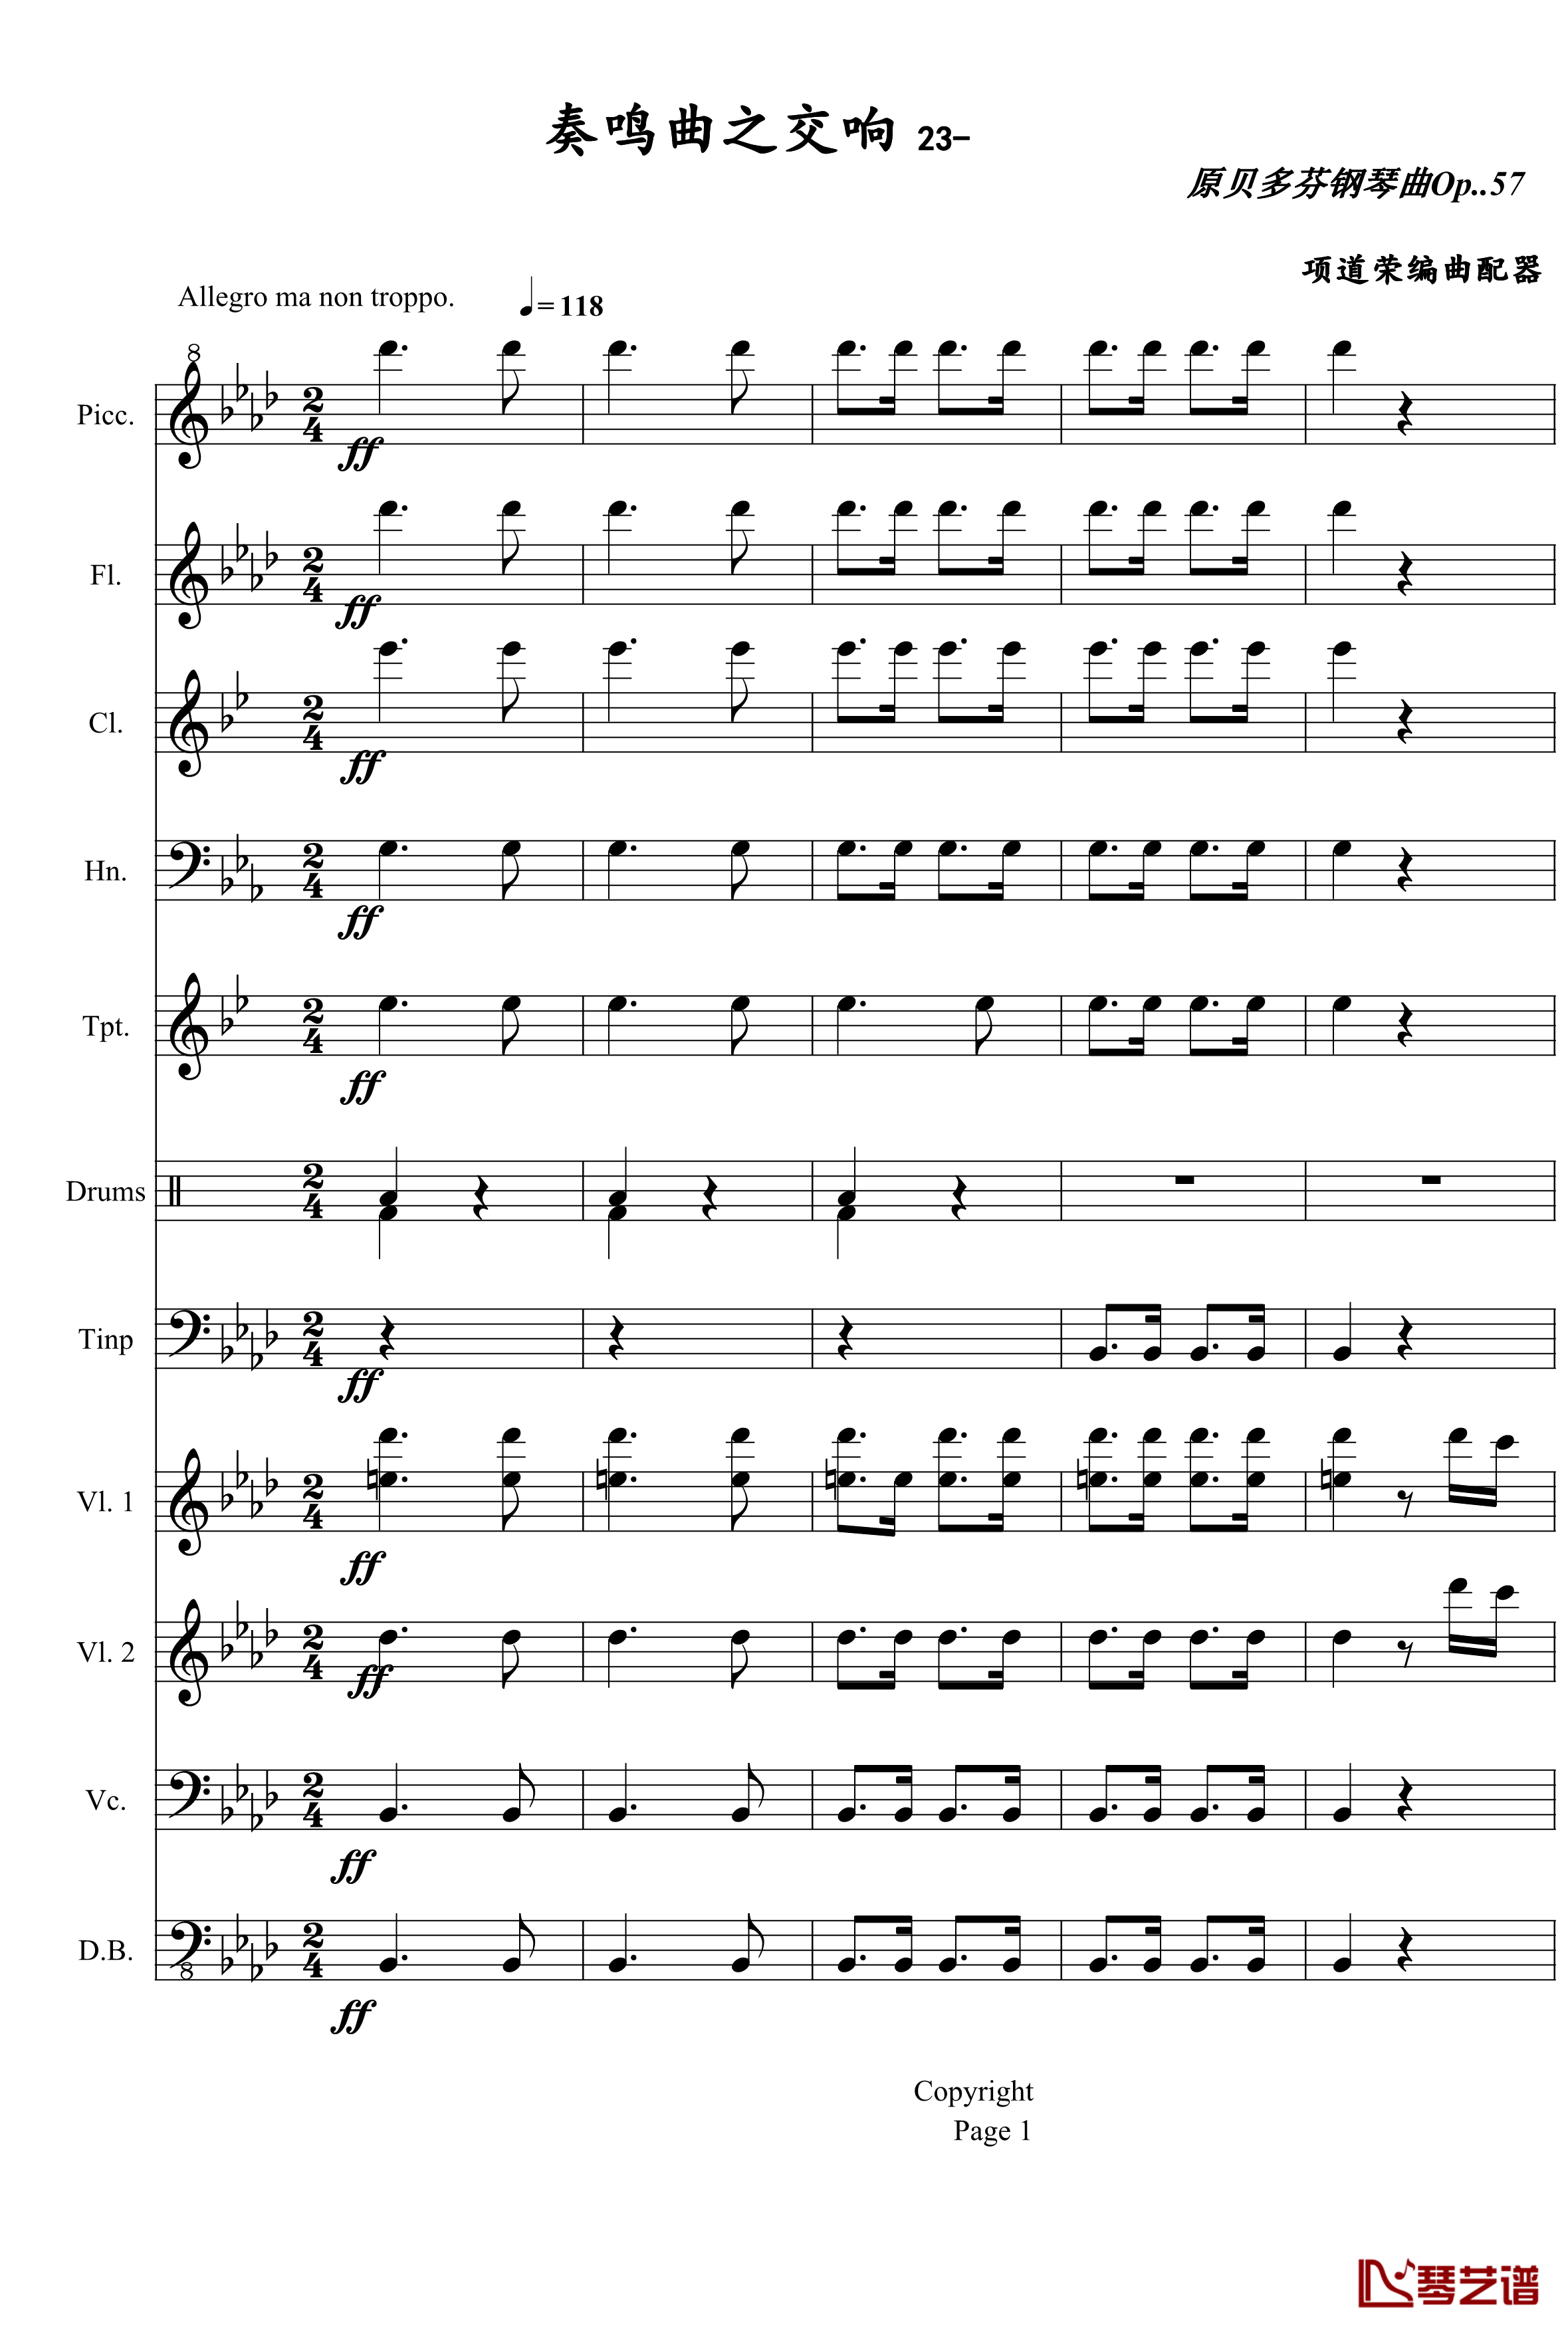 奏鸣曲之交响第23首Ⅲ钢琴谱--贝多芬-beethoven1